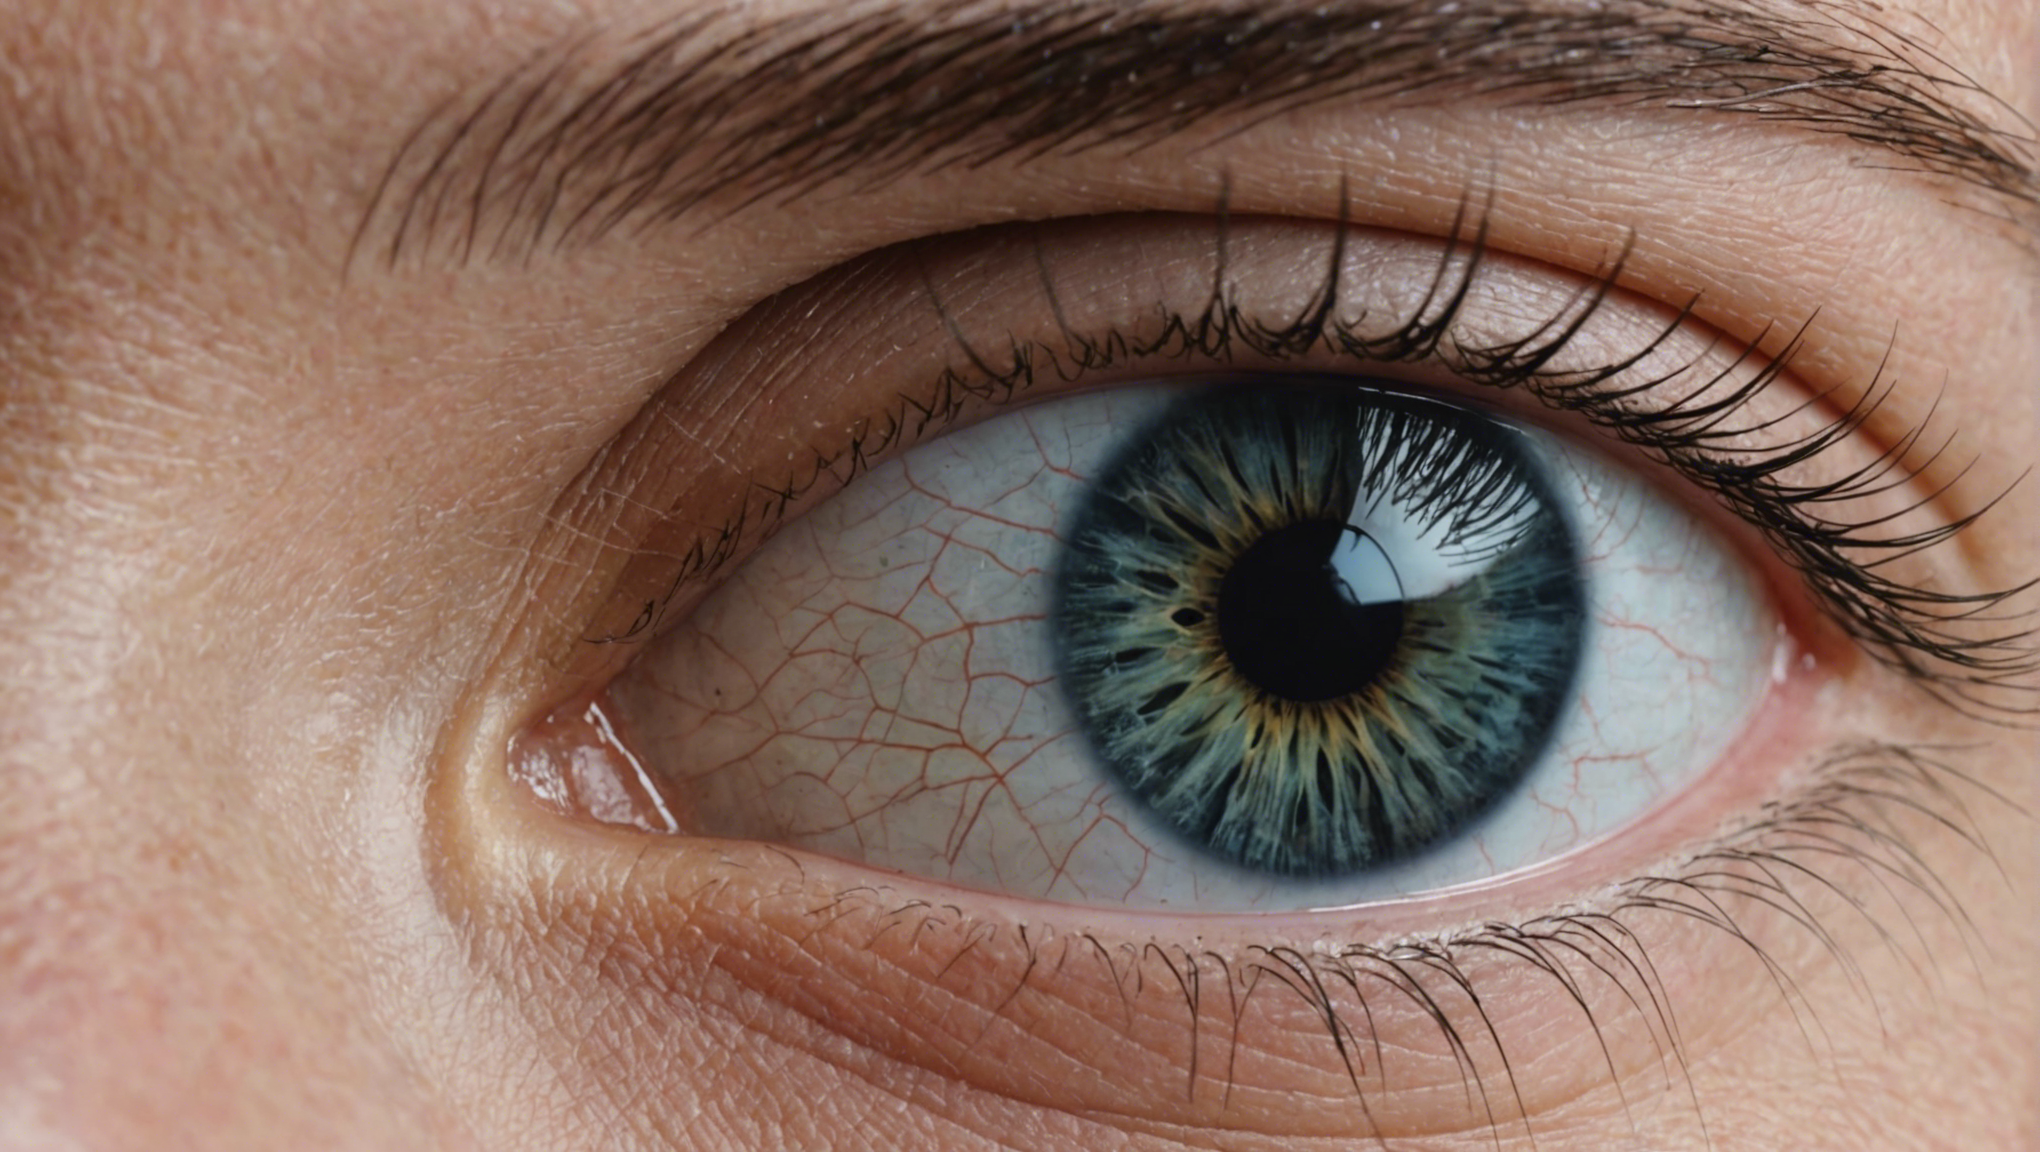 découvrez le syndrome de l'œil sec et ses symptômes. apprenez comment le traiter et en savoir plus sur cette condition oculaire courante.